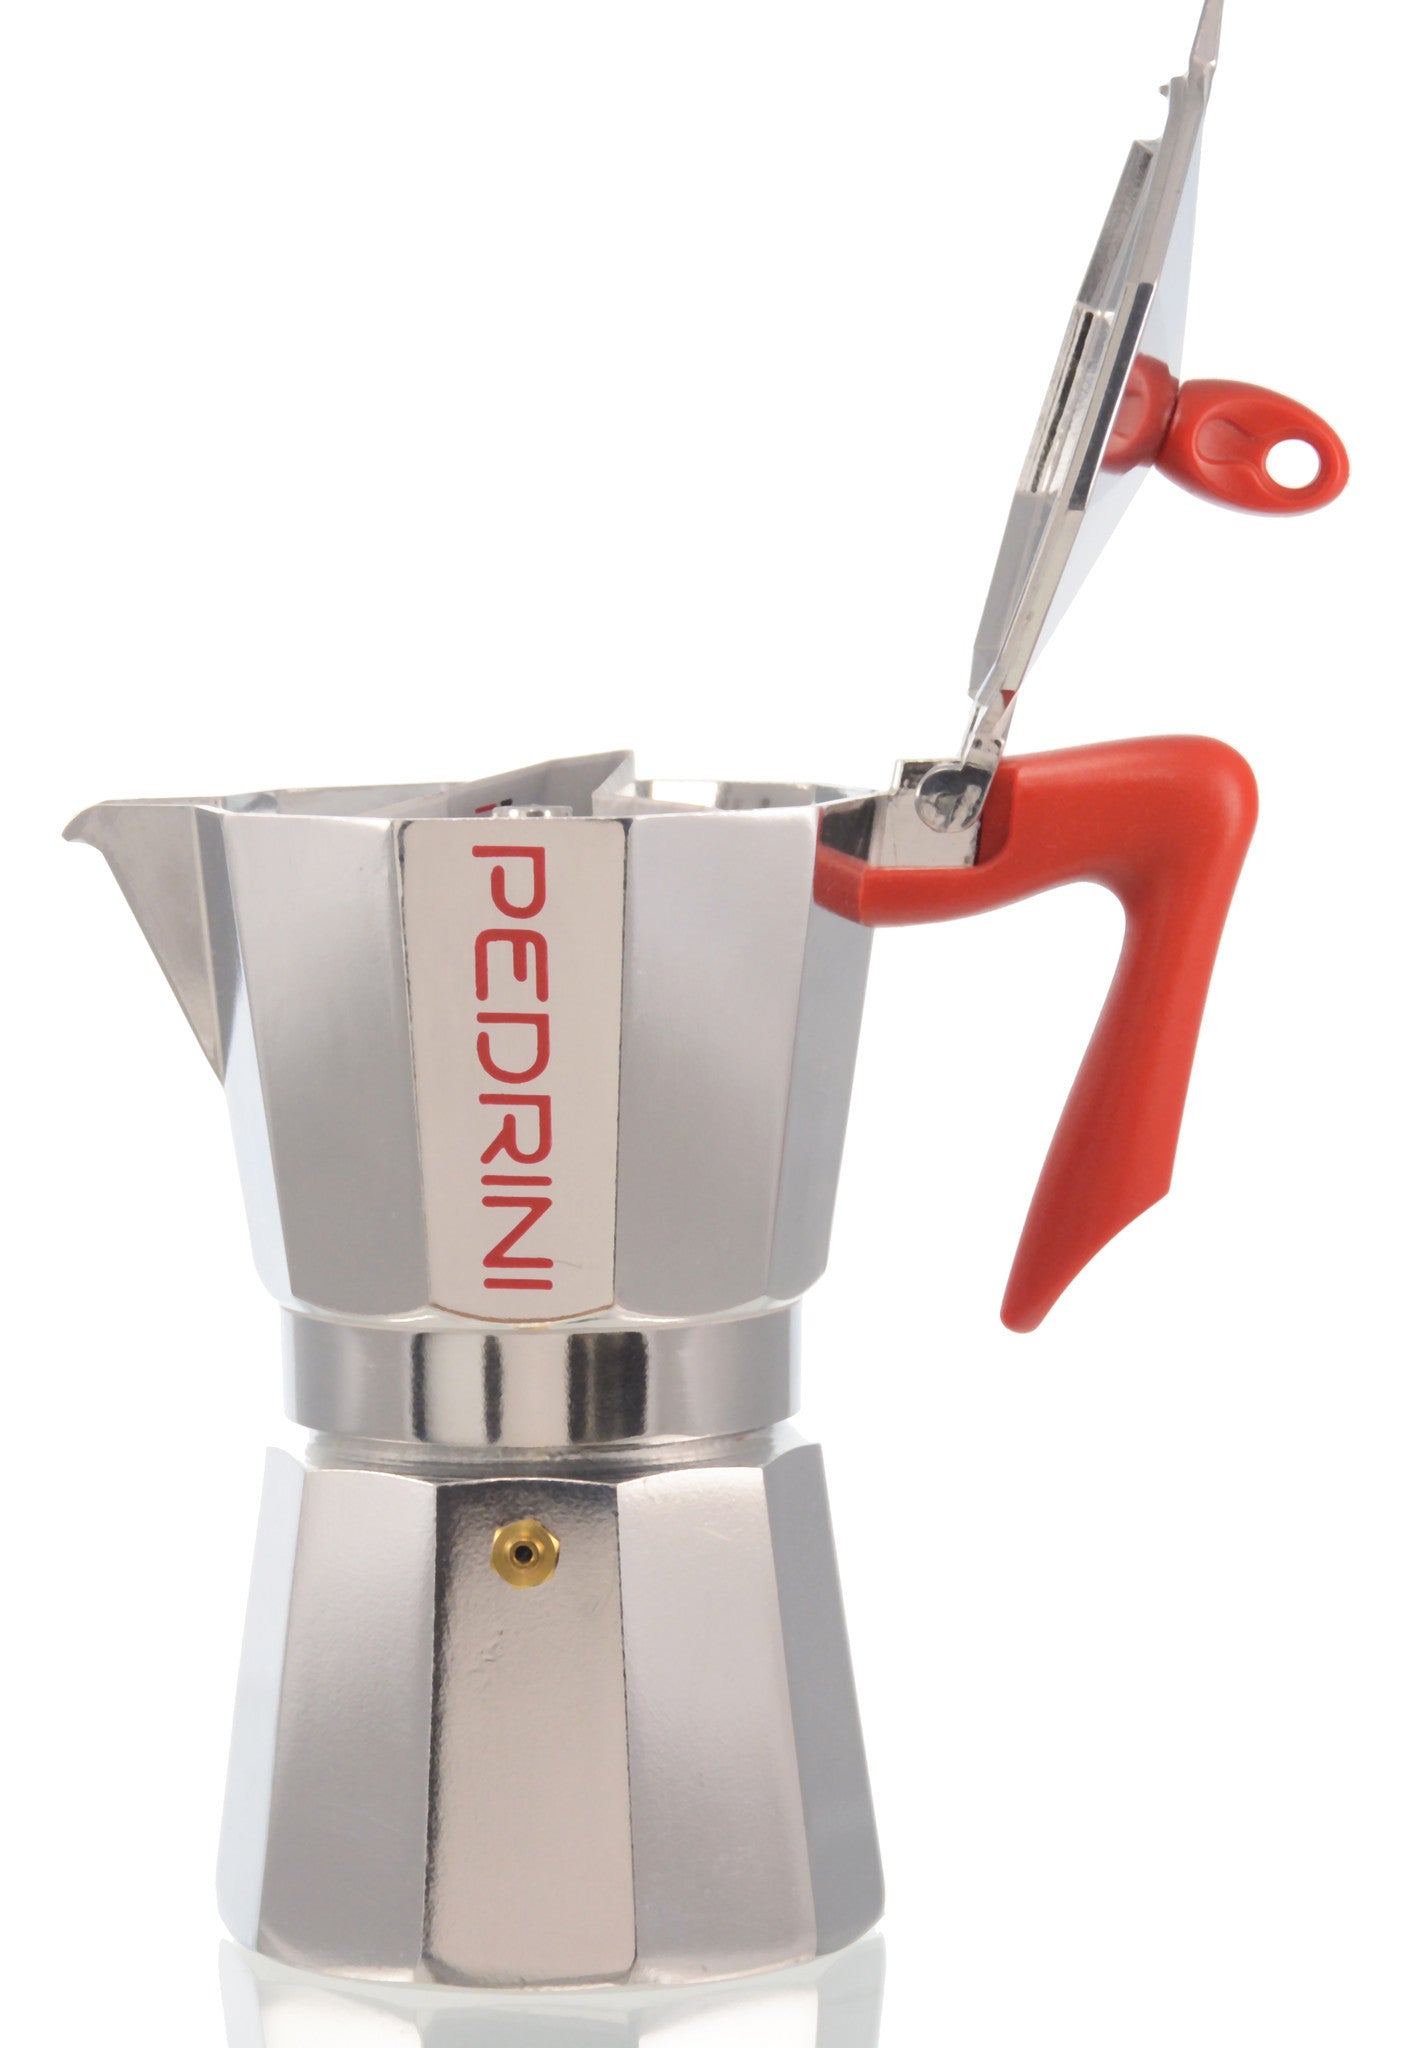 Pedrini, Italian Coffee Maker - Home & Kitchen